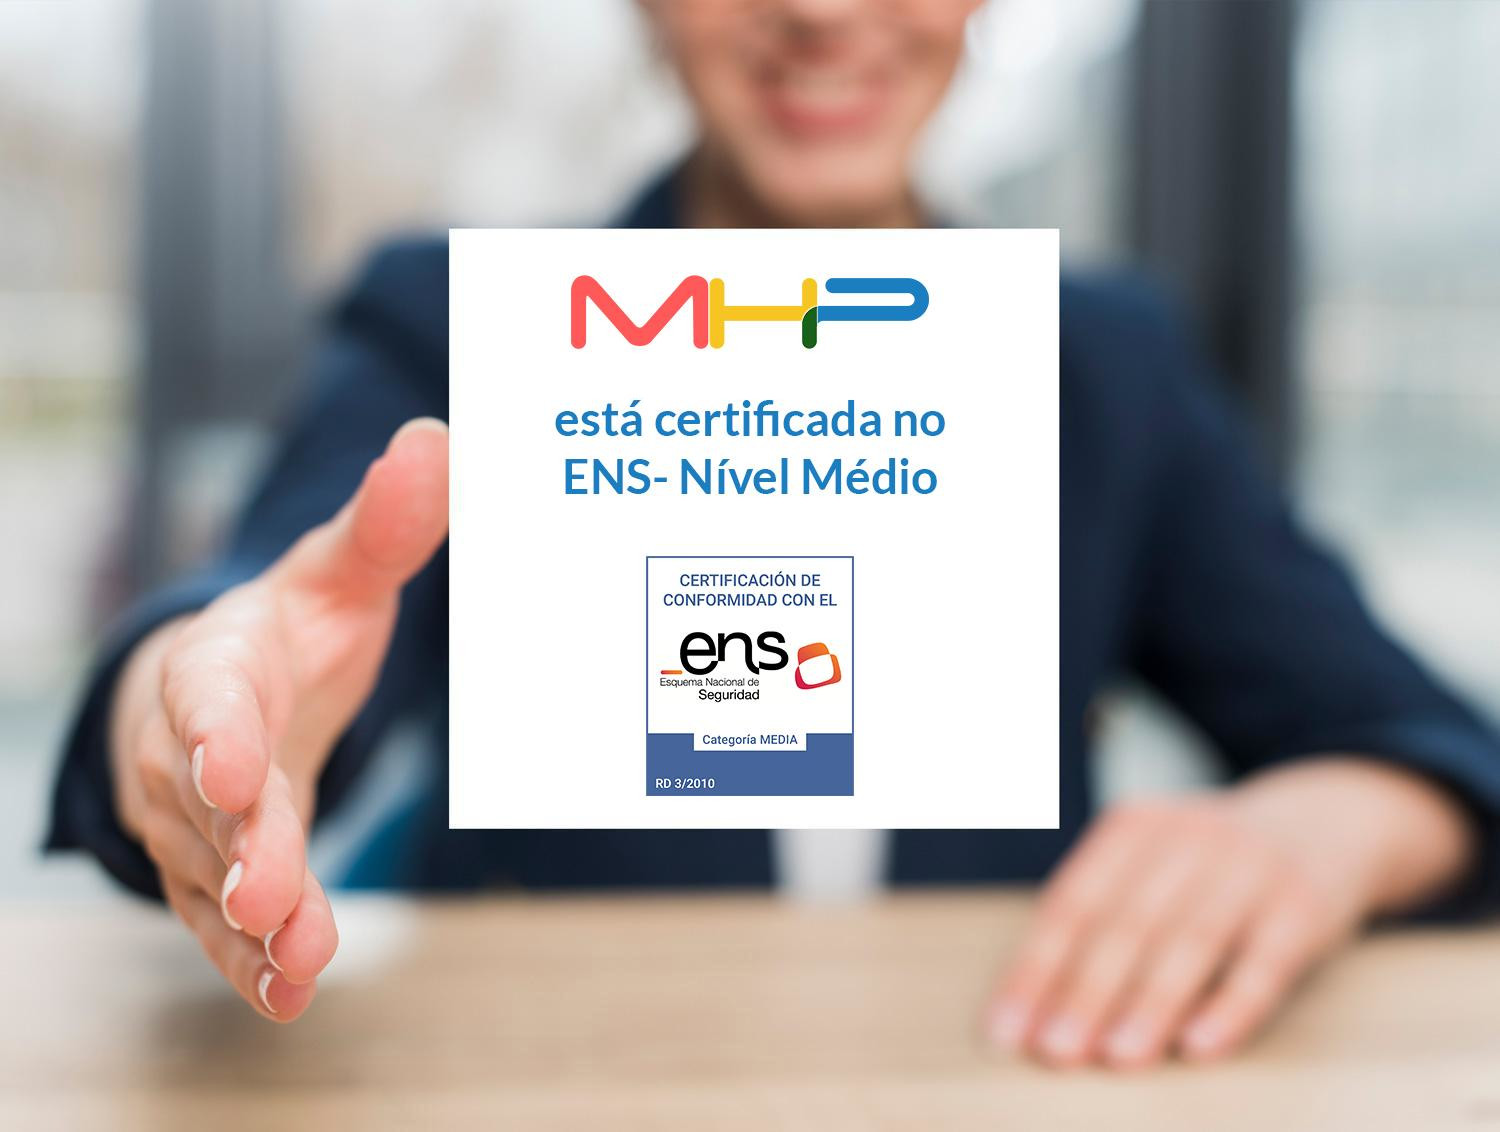 Os sistemas de informação da MHP, recebem novamente o certificado de conformidade com o ENS na Espanha!